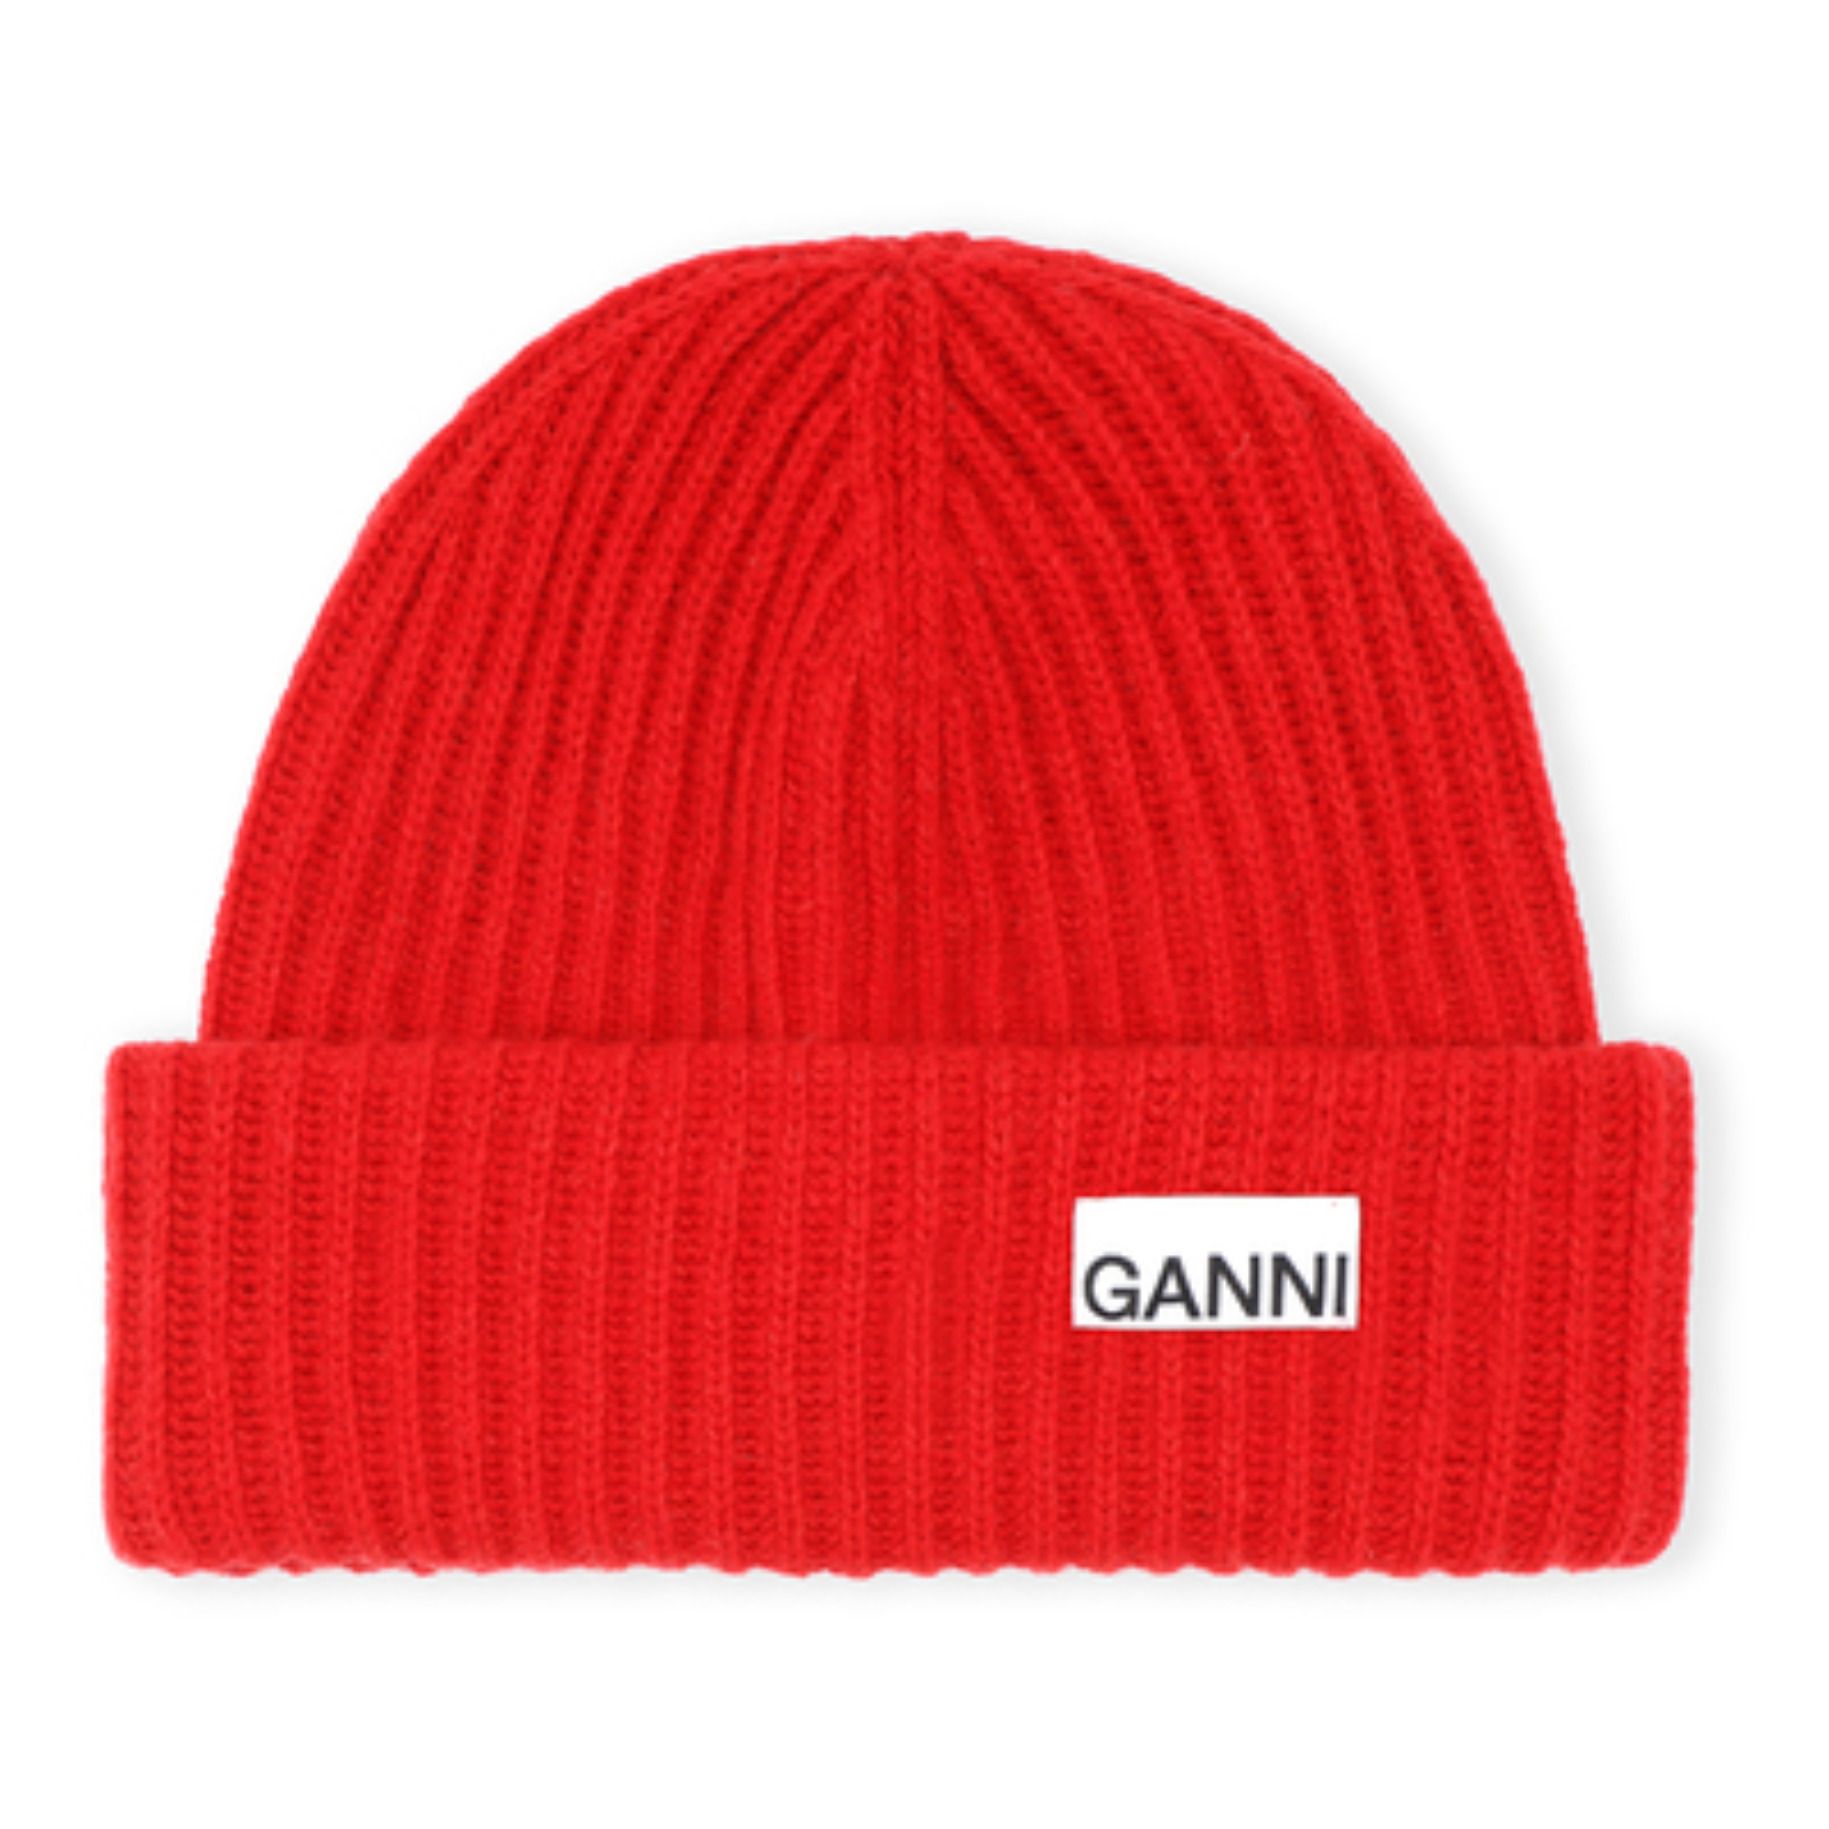 Ganni - Bonnet Laine Recyclée - Femme - Rouge